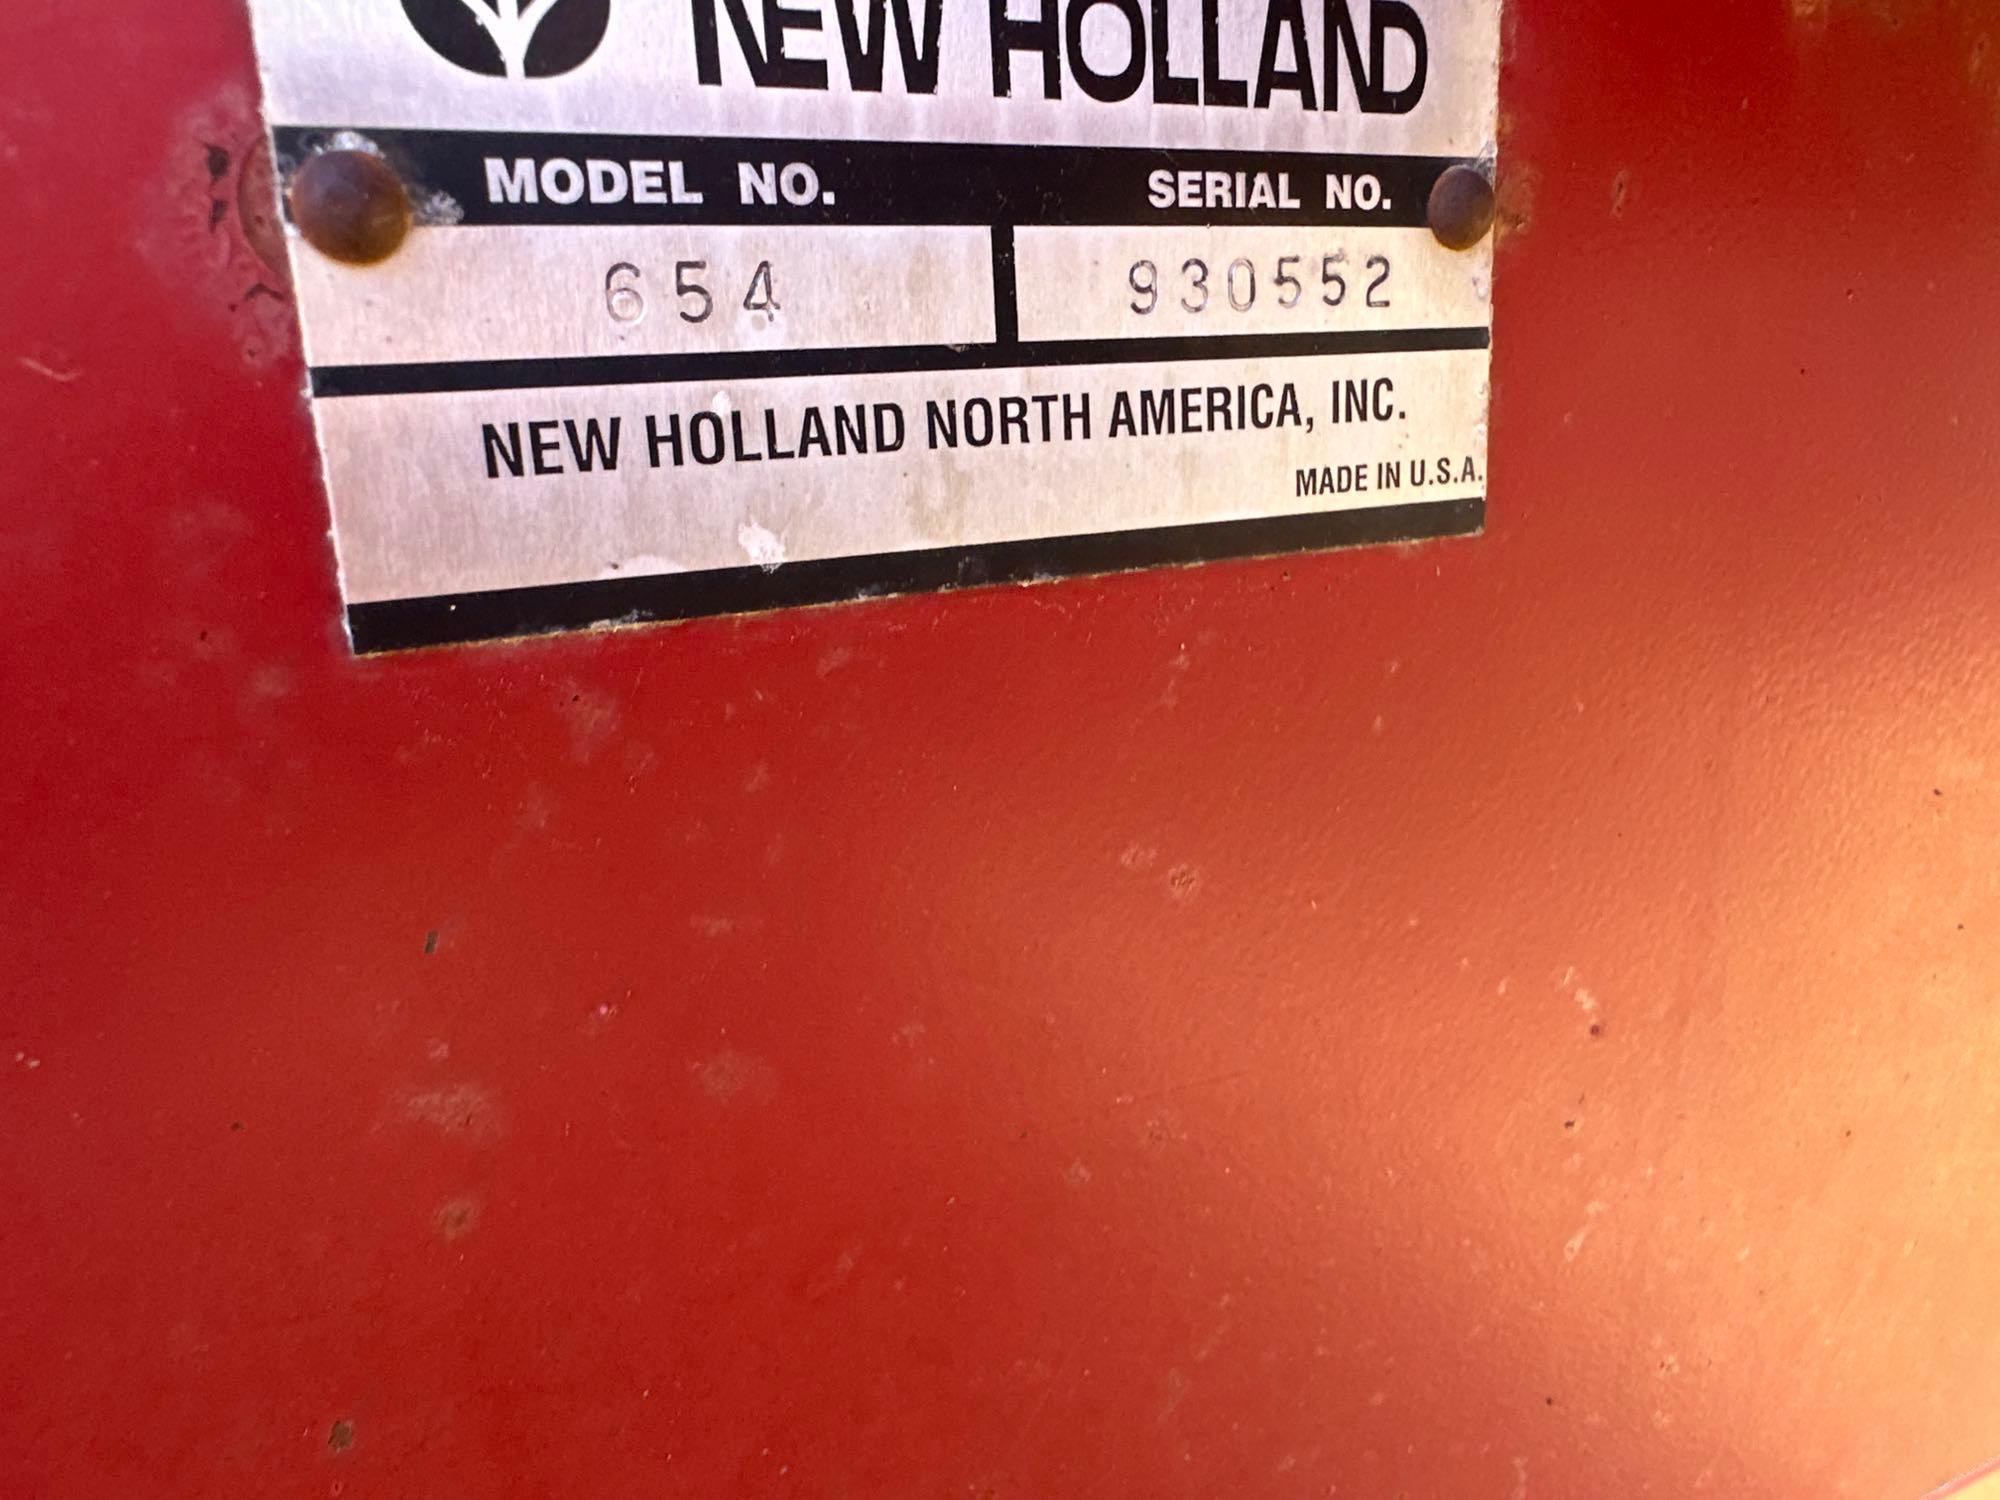 NEW HOLLAND 654 ROUND BALER